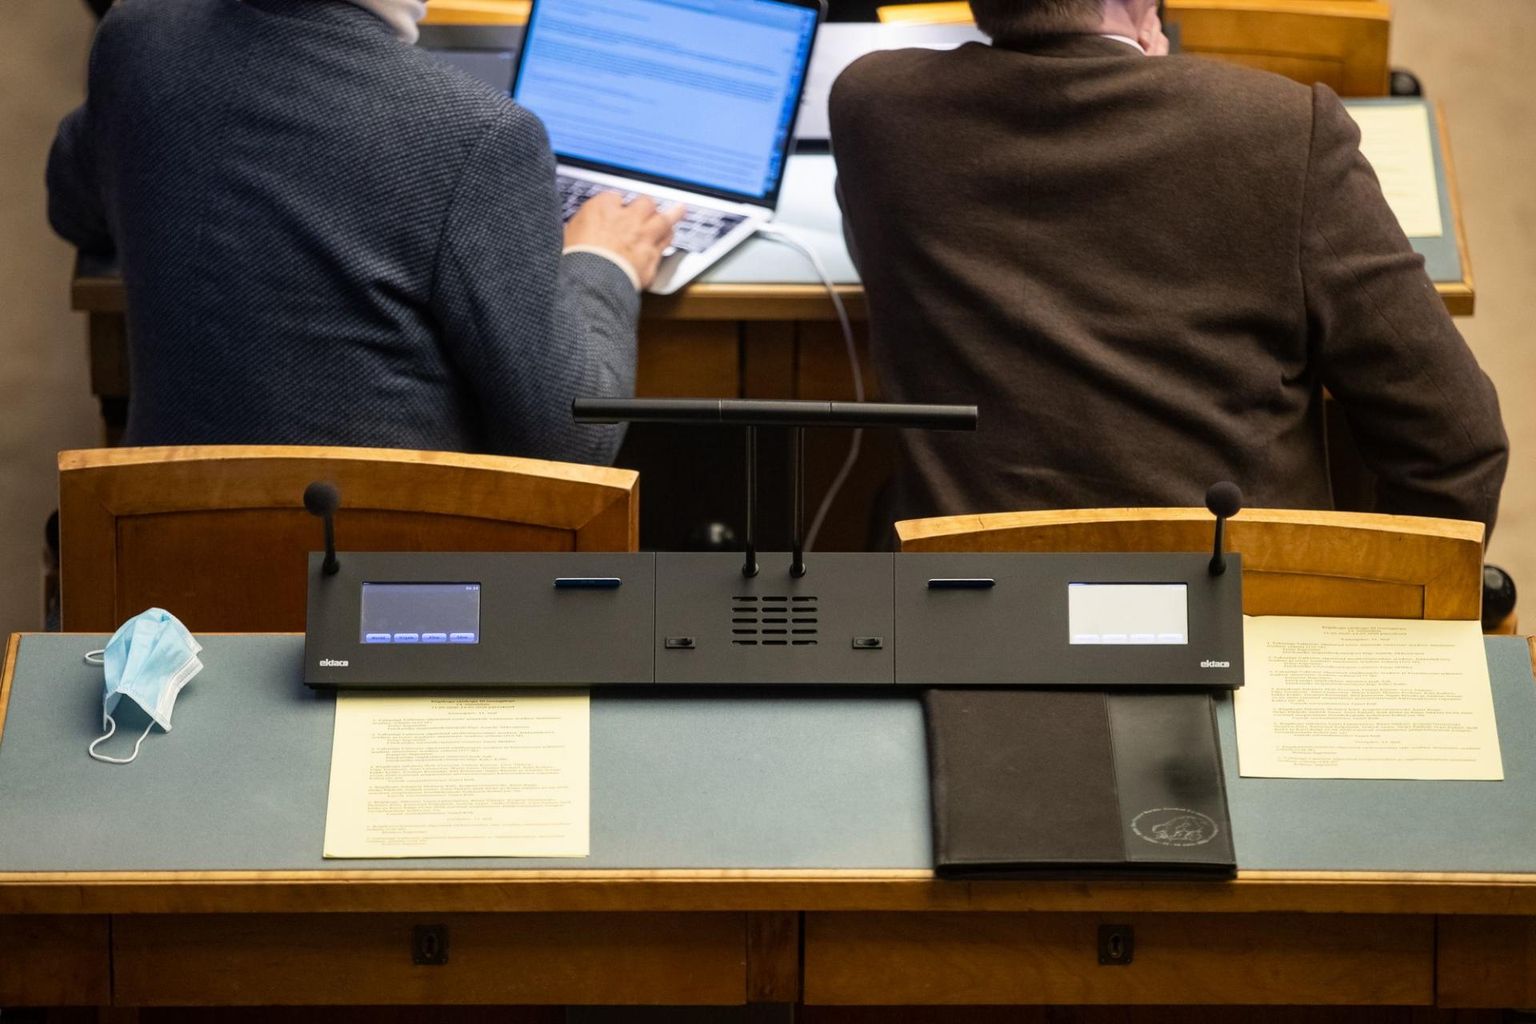 Riigikogu hääletuspult, mis on kasutuses olnud aastast 2012.  Hääletuspuldi rakenduse ja videolahenduse loomine läheb maksma 300 000 eurot ning see peaks valmima suve lõpuks.